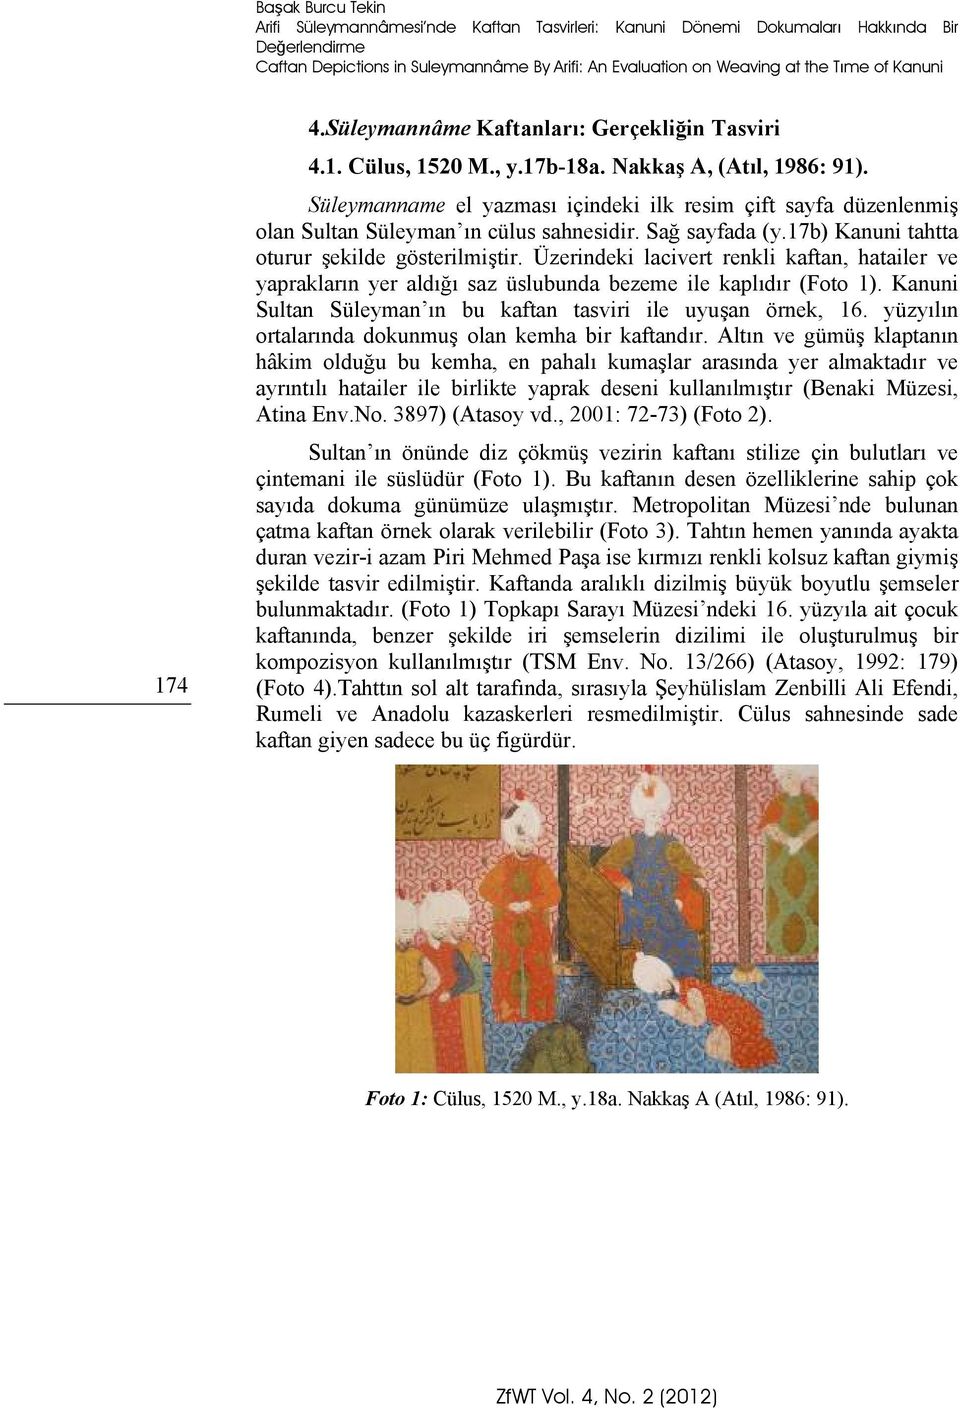 Süleymanname el yazması içindeki ilk resim çift sayfa düzenlenmiş olan Sultan Süleyman ın cülus sahnesidir. Sağ sayfada (y.17b) Kanuni tahtta oturur şekilde gösterilmiştir.